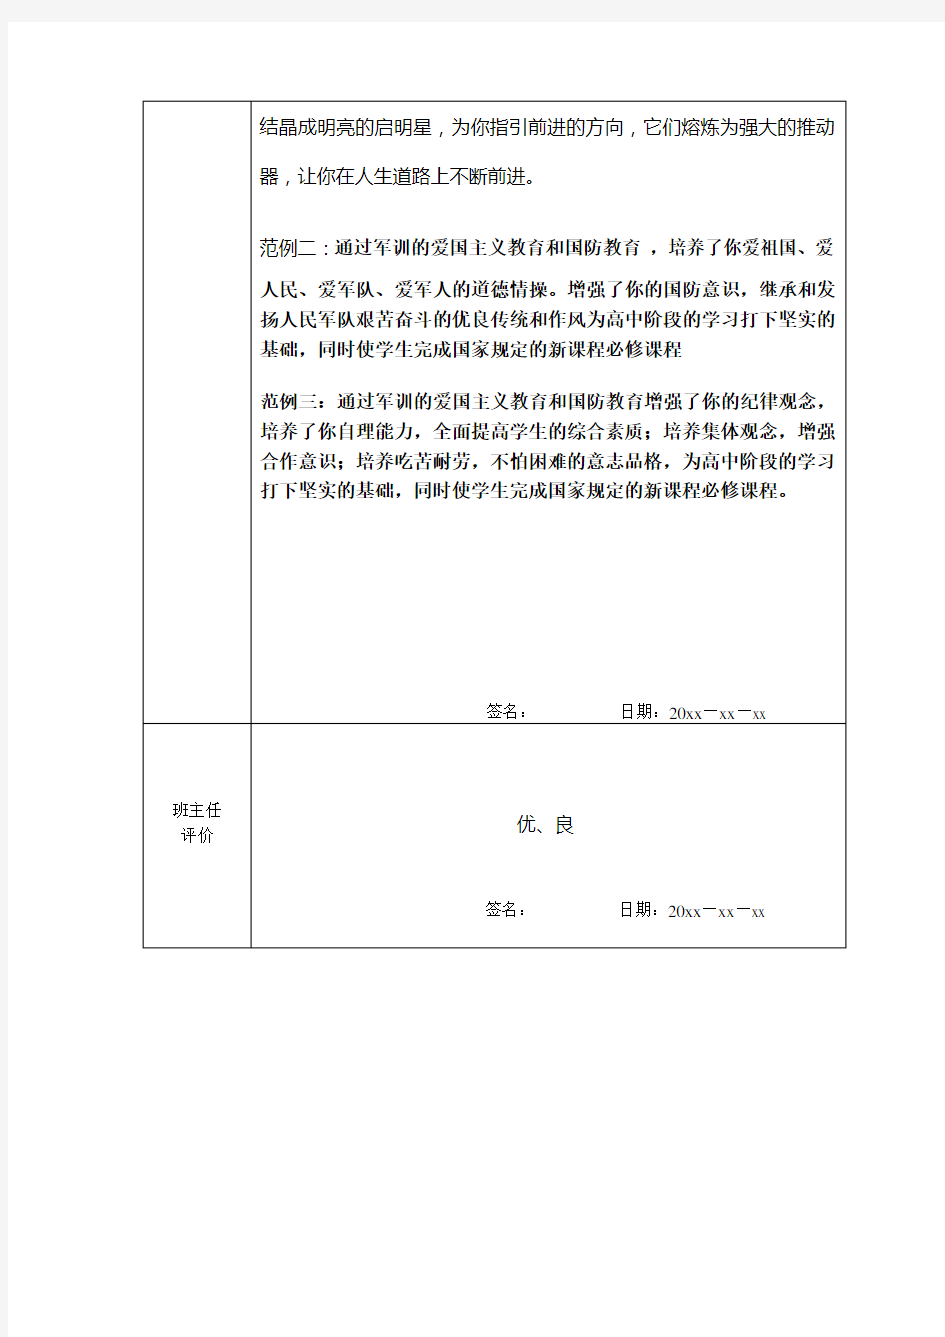 云南省普通高中学生成长记录—社会实践活动登记表-图文